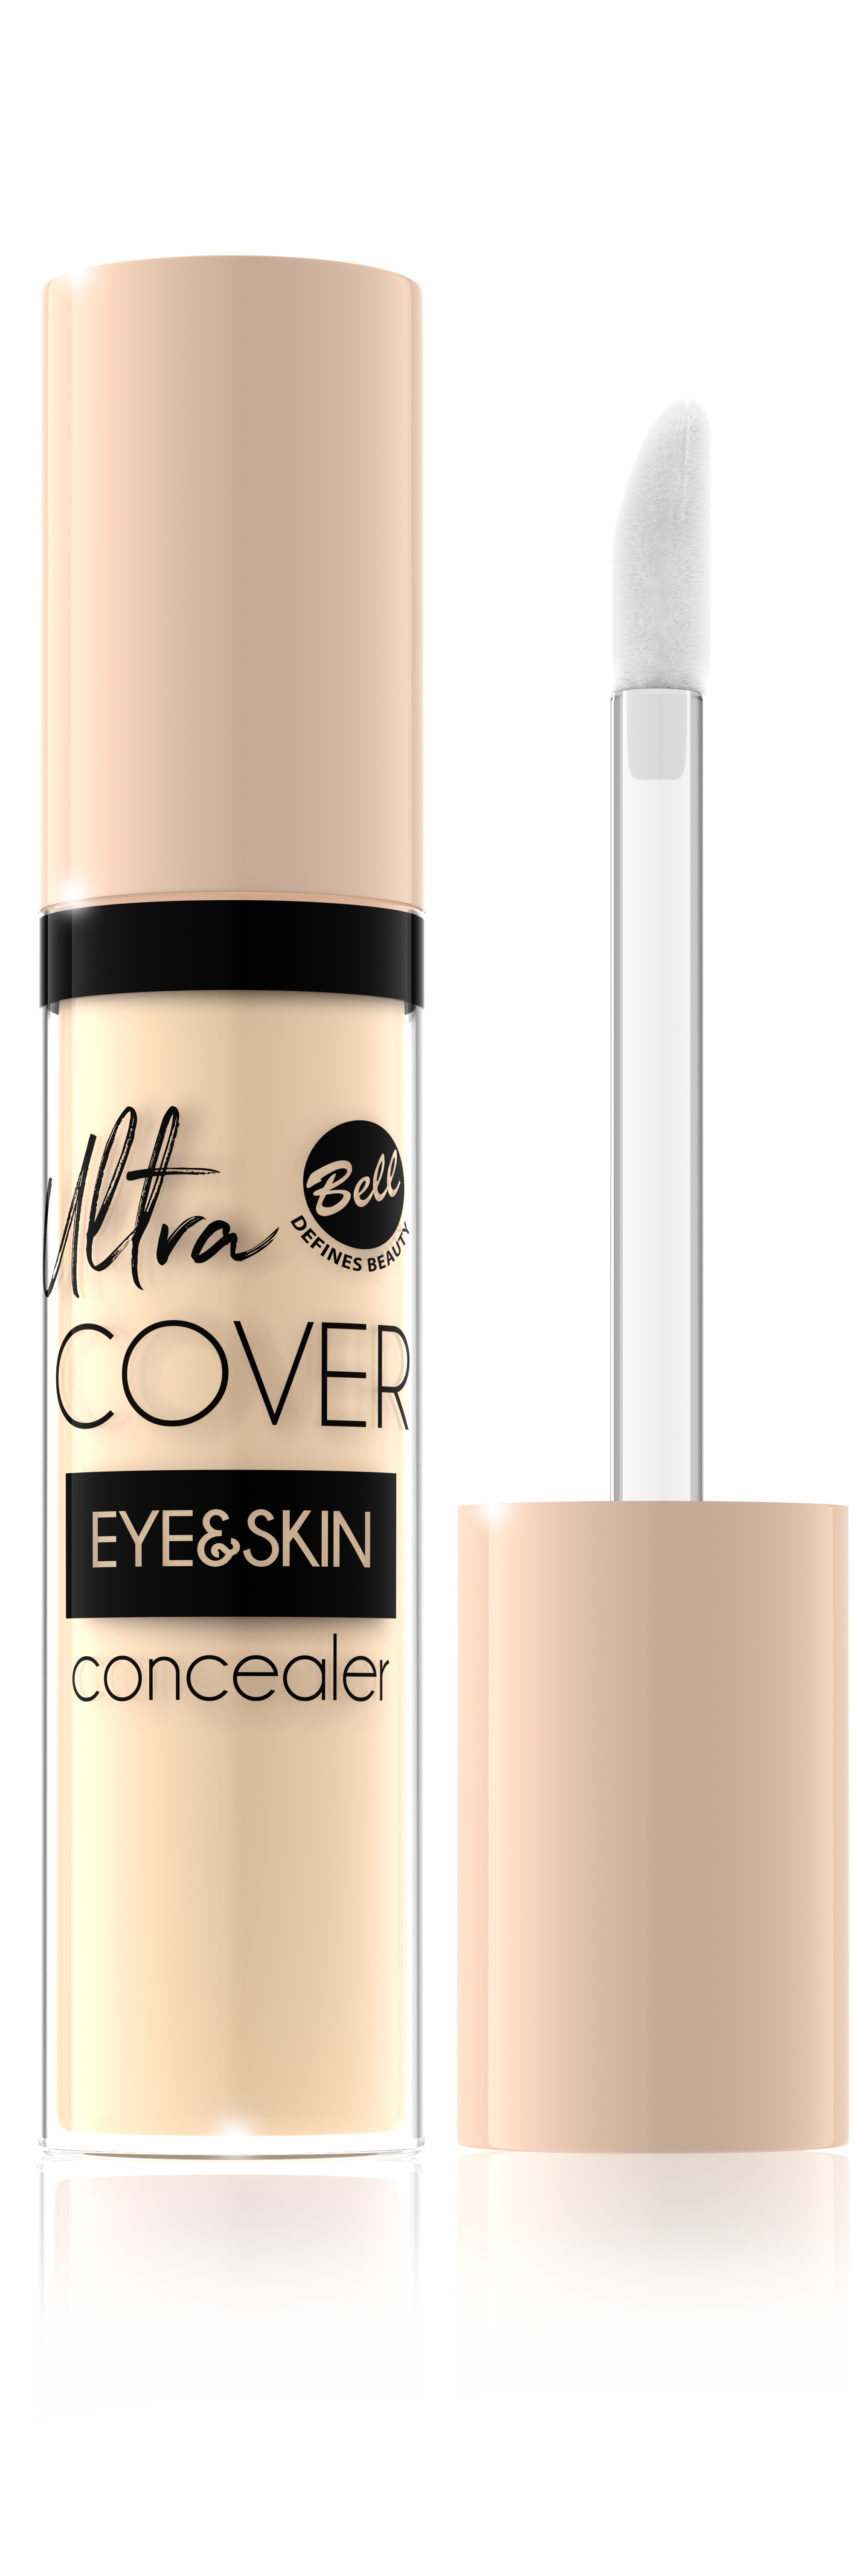 Ultra Cover Eye&Skin Concealer